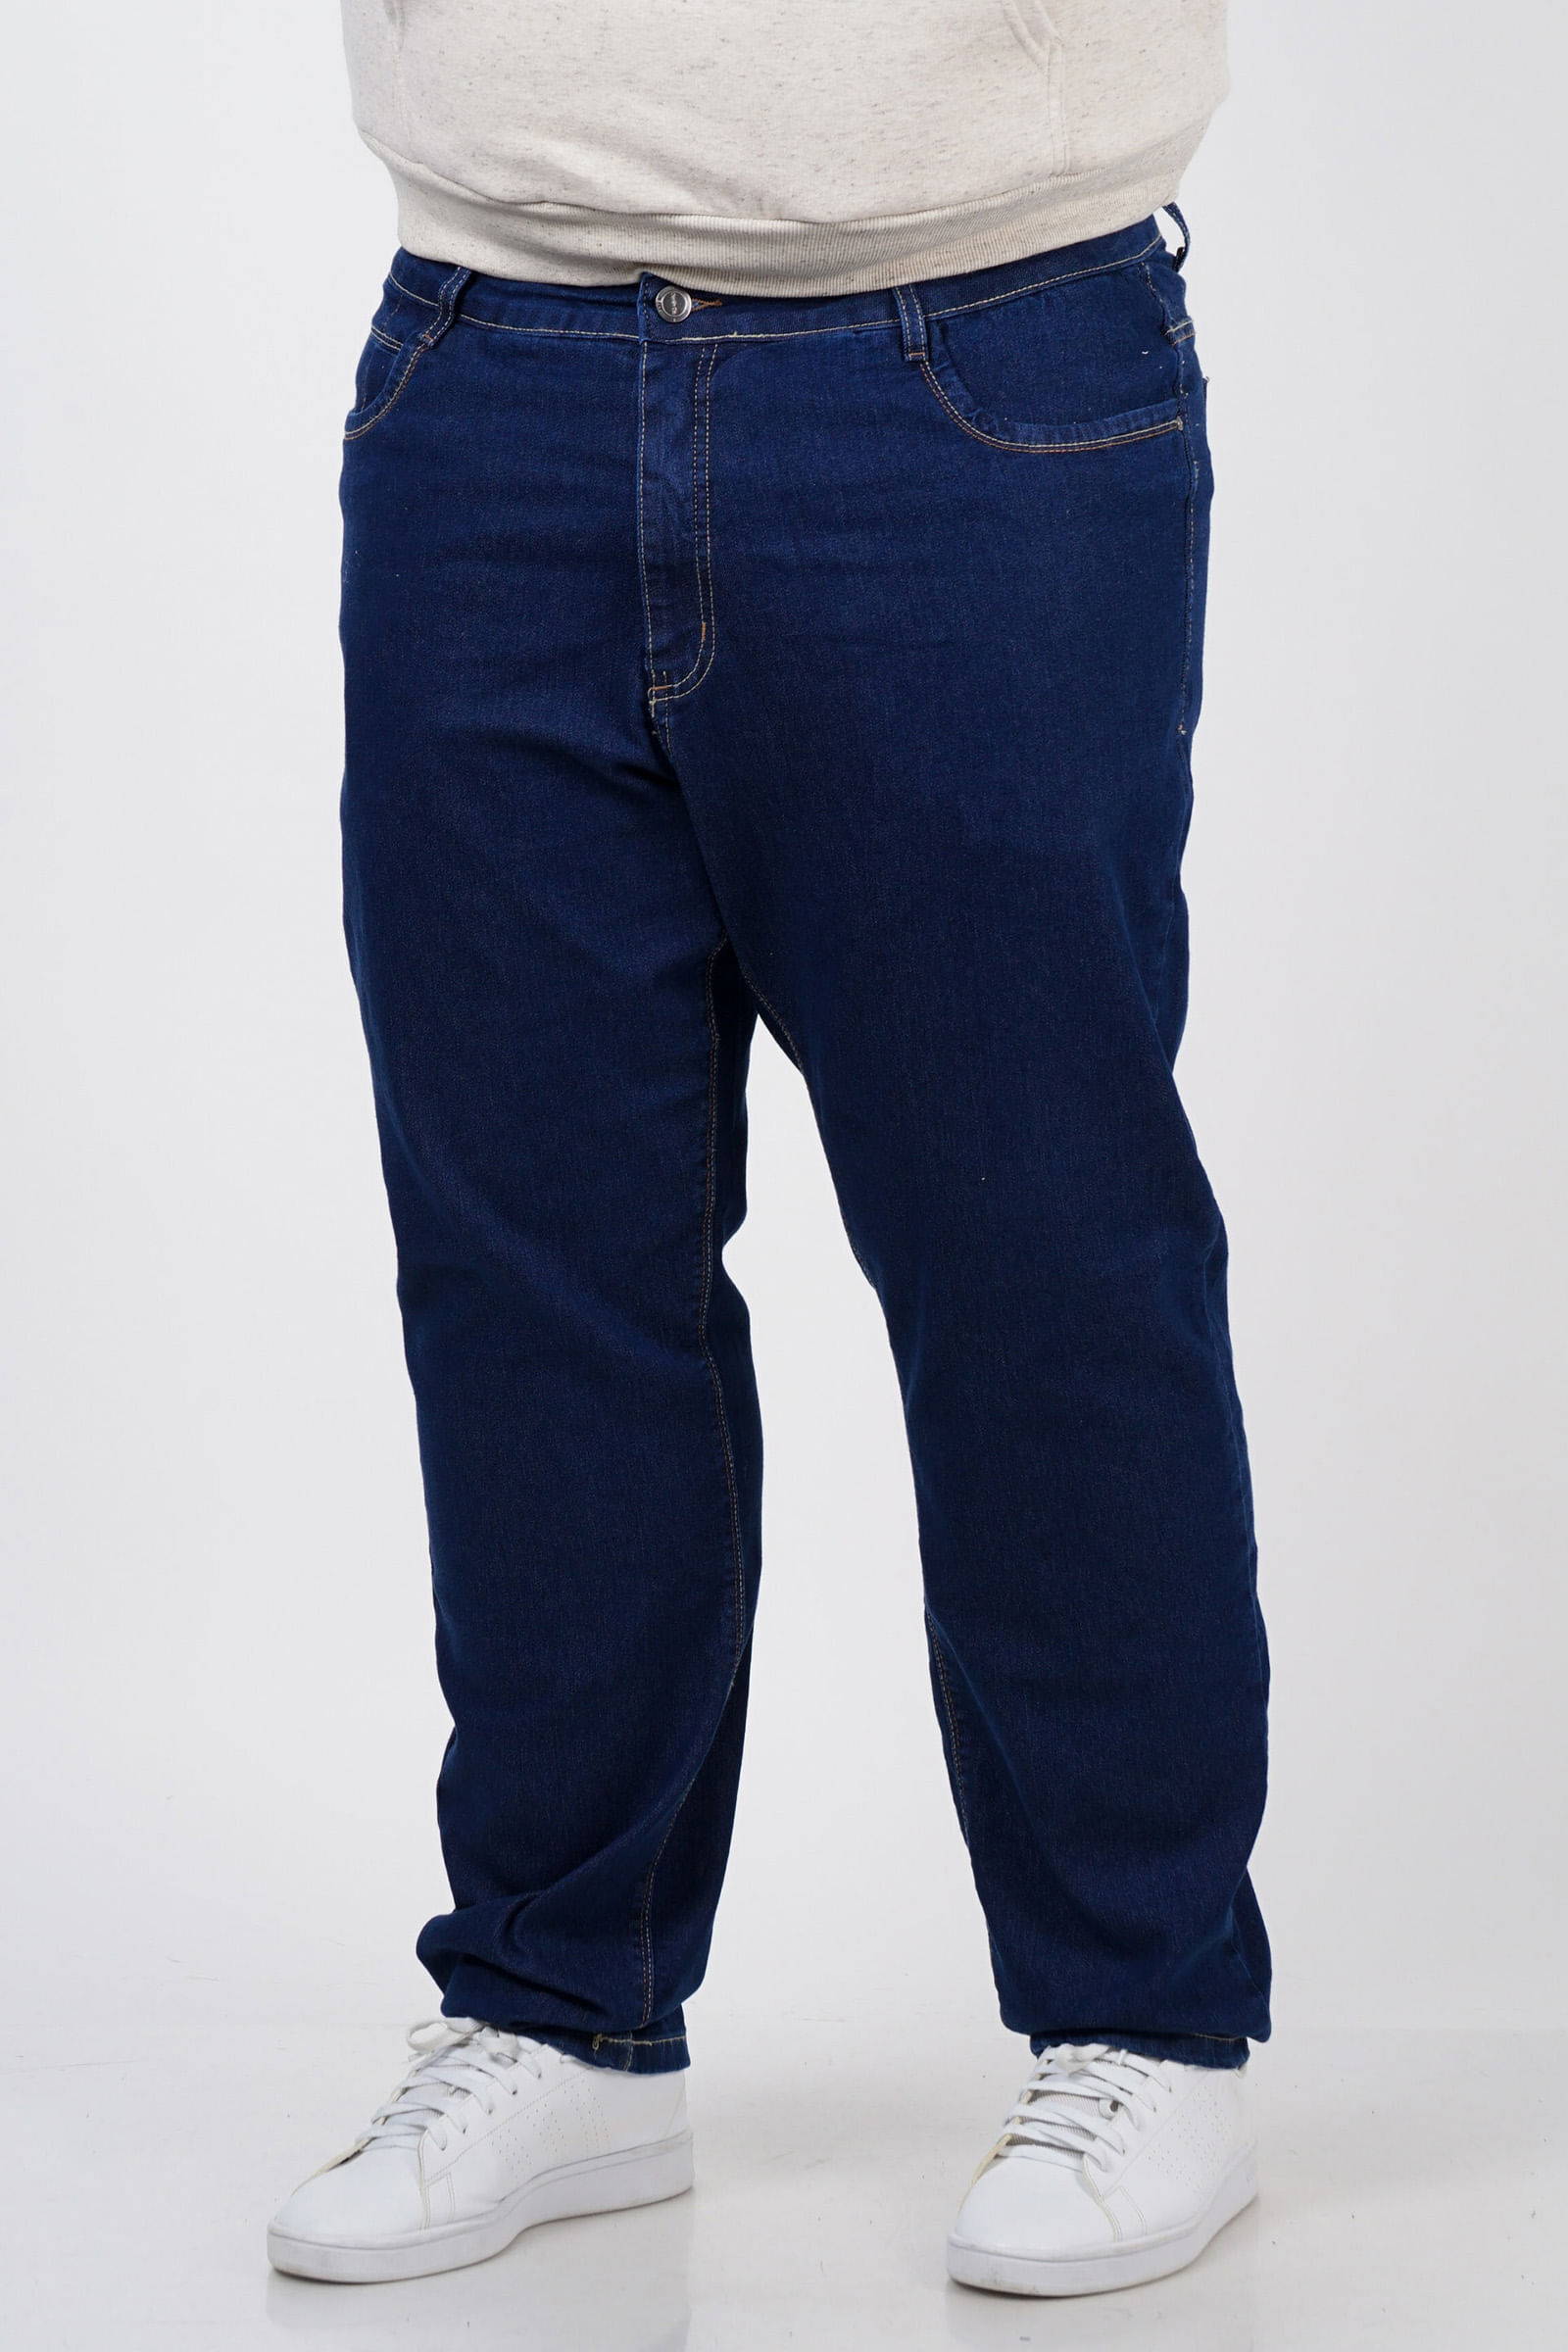 Calca-jeans-reta-plus-size_0102_1